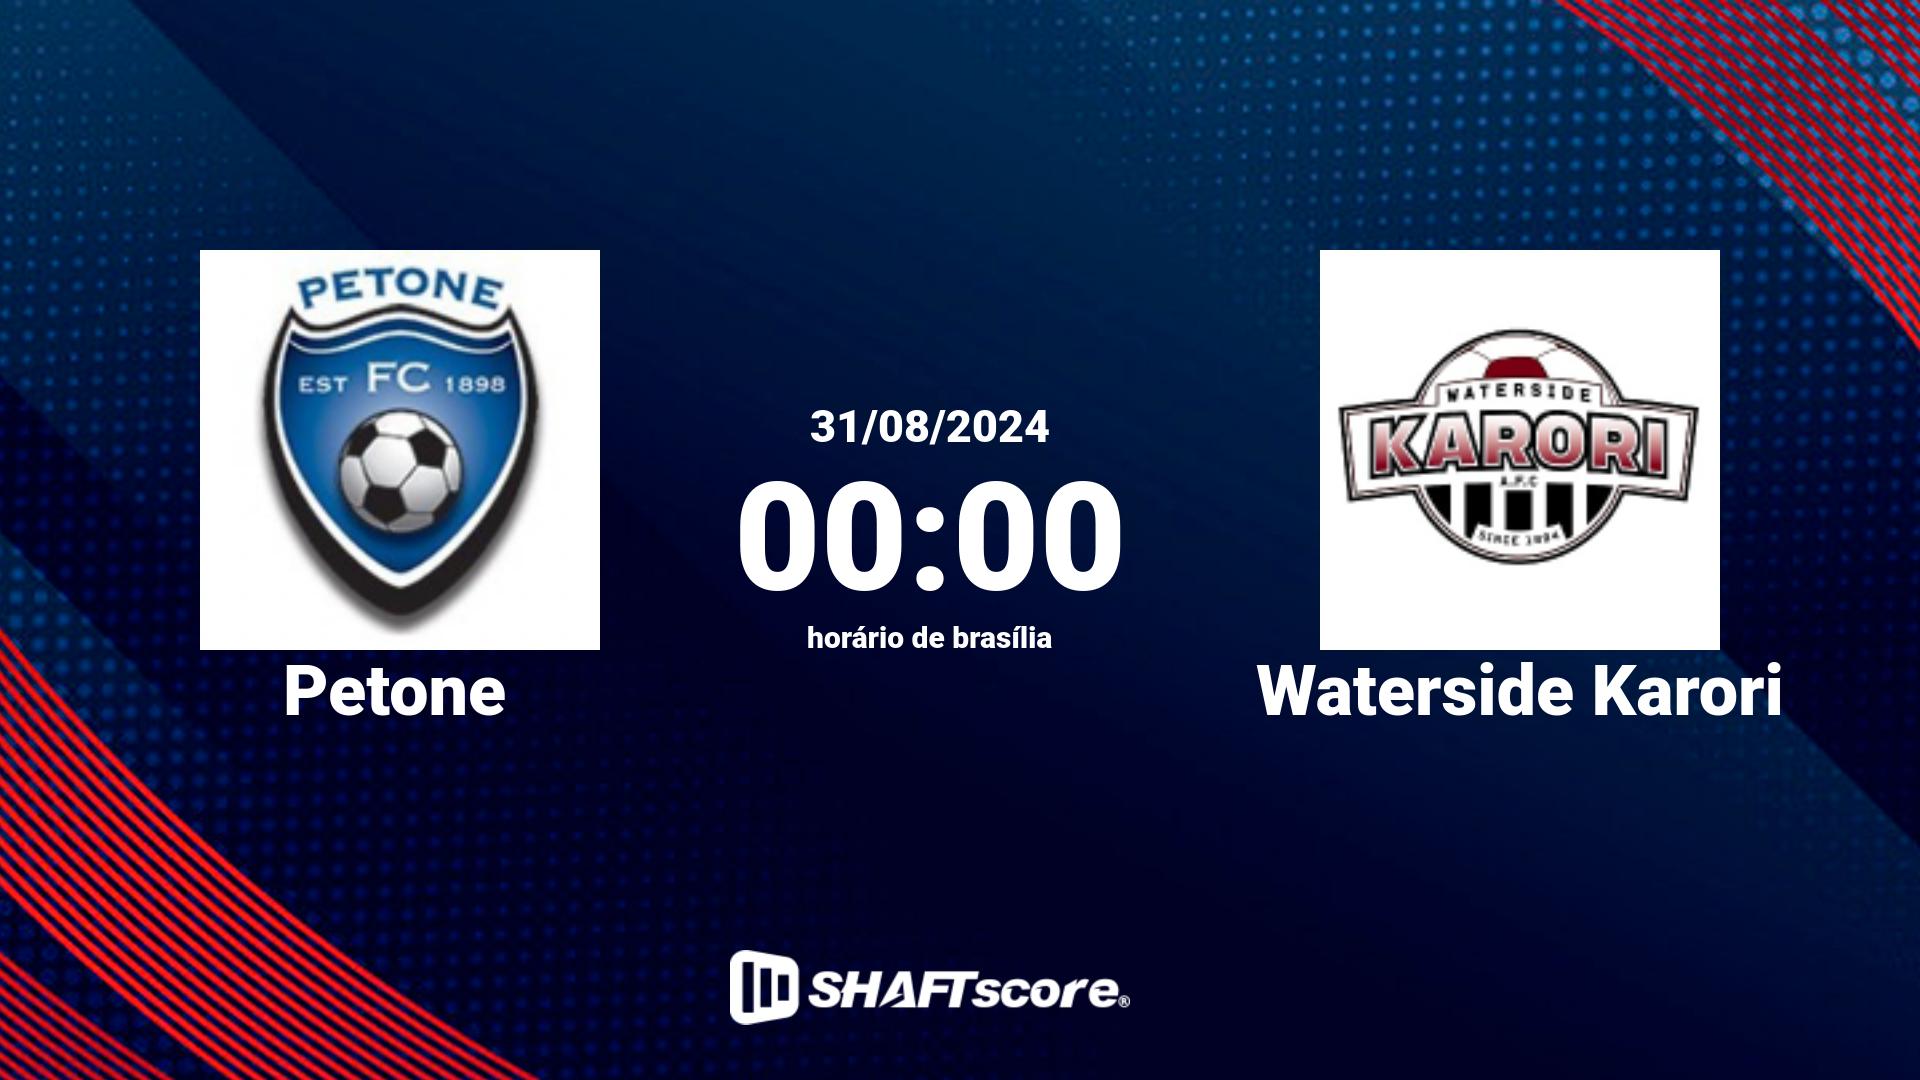 Estatísticas do jogo Petone vs Waterside Karori 31.08 00:00